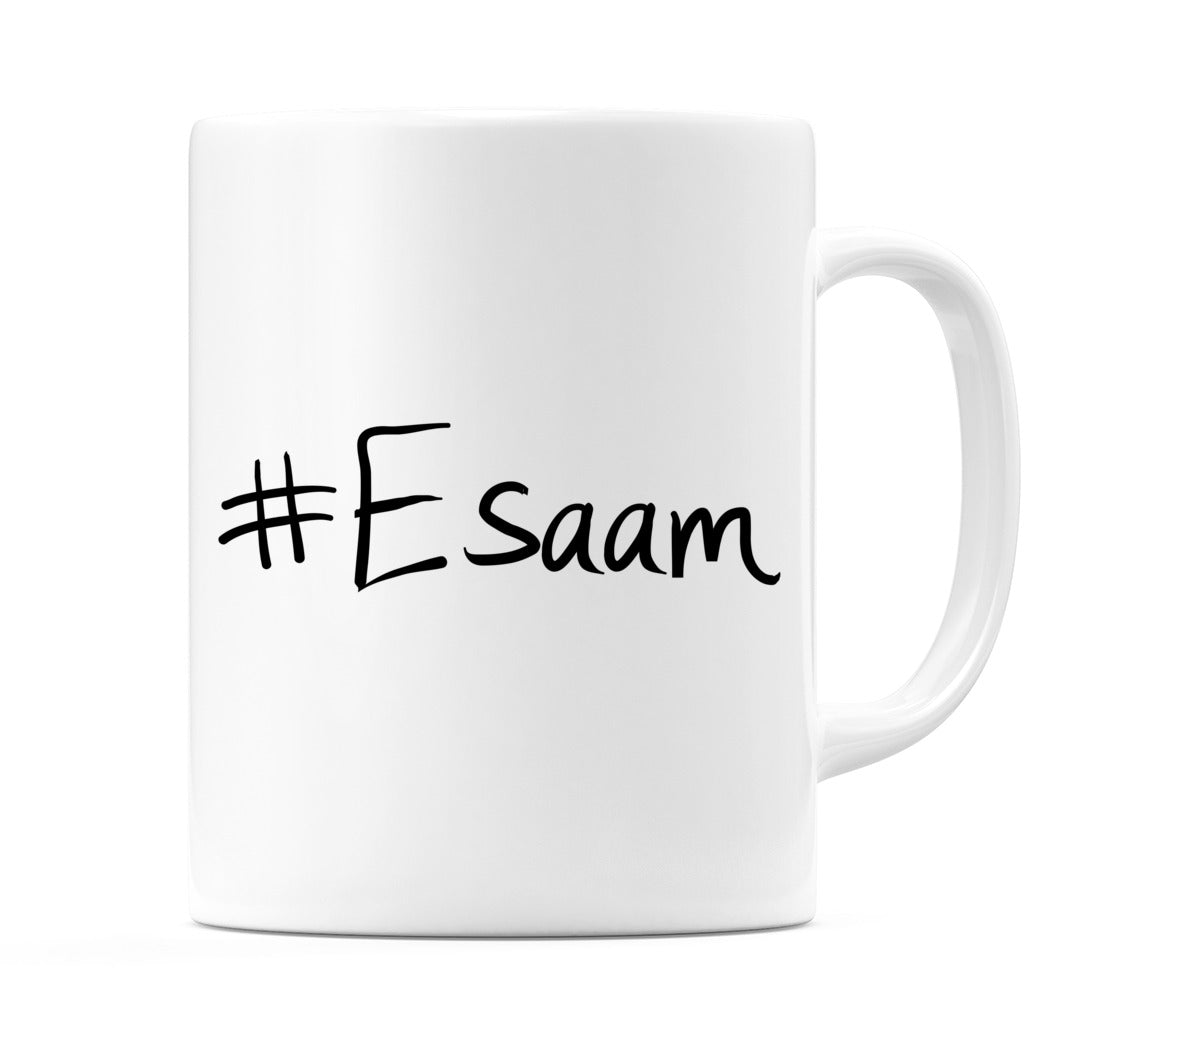 #Esaam Mug